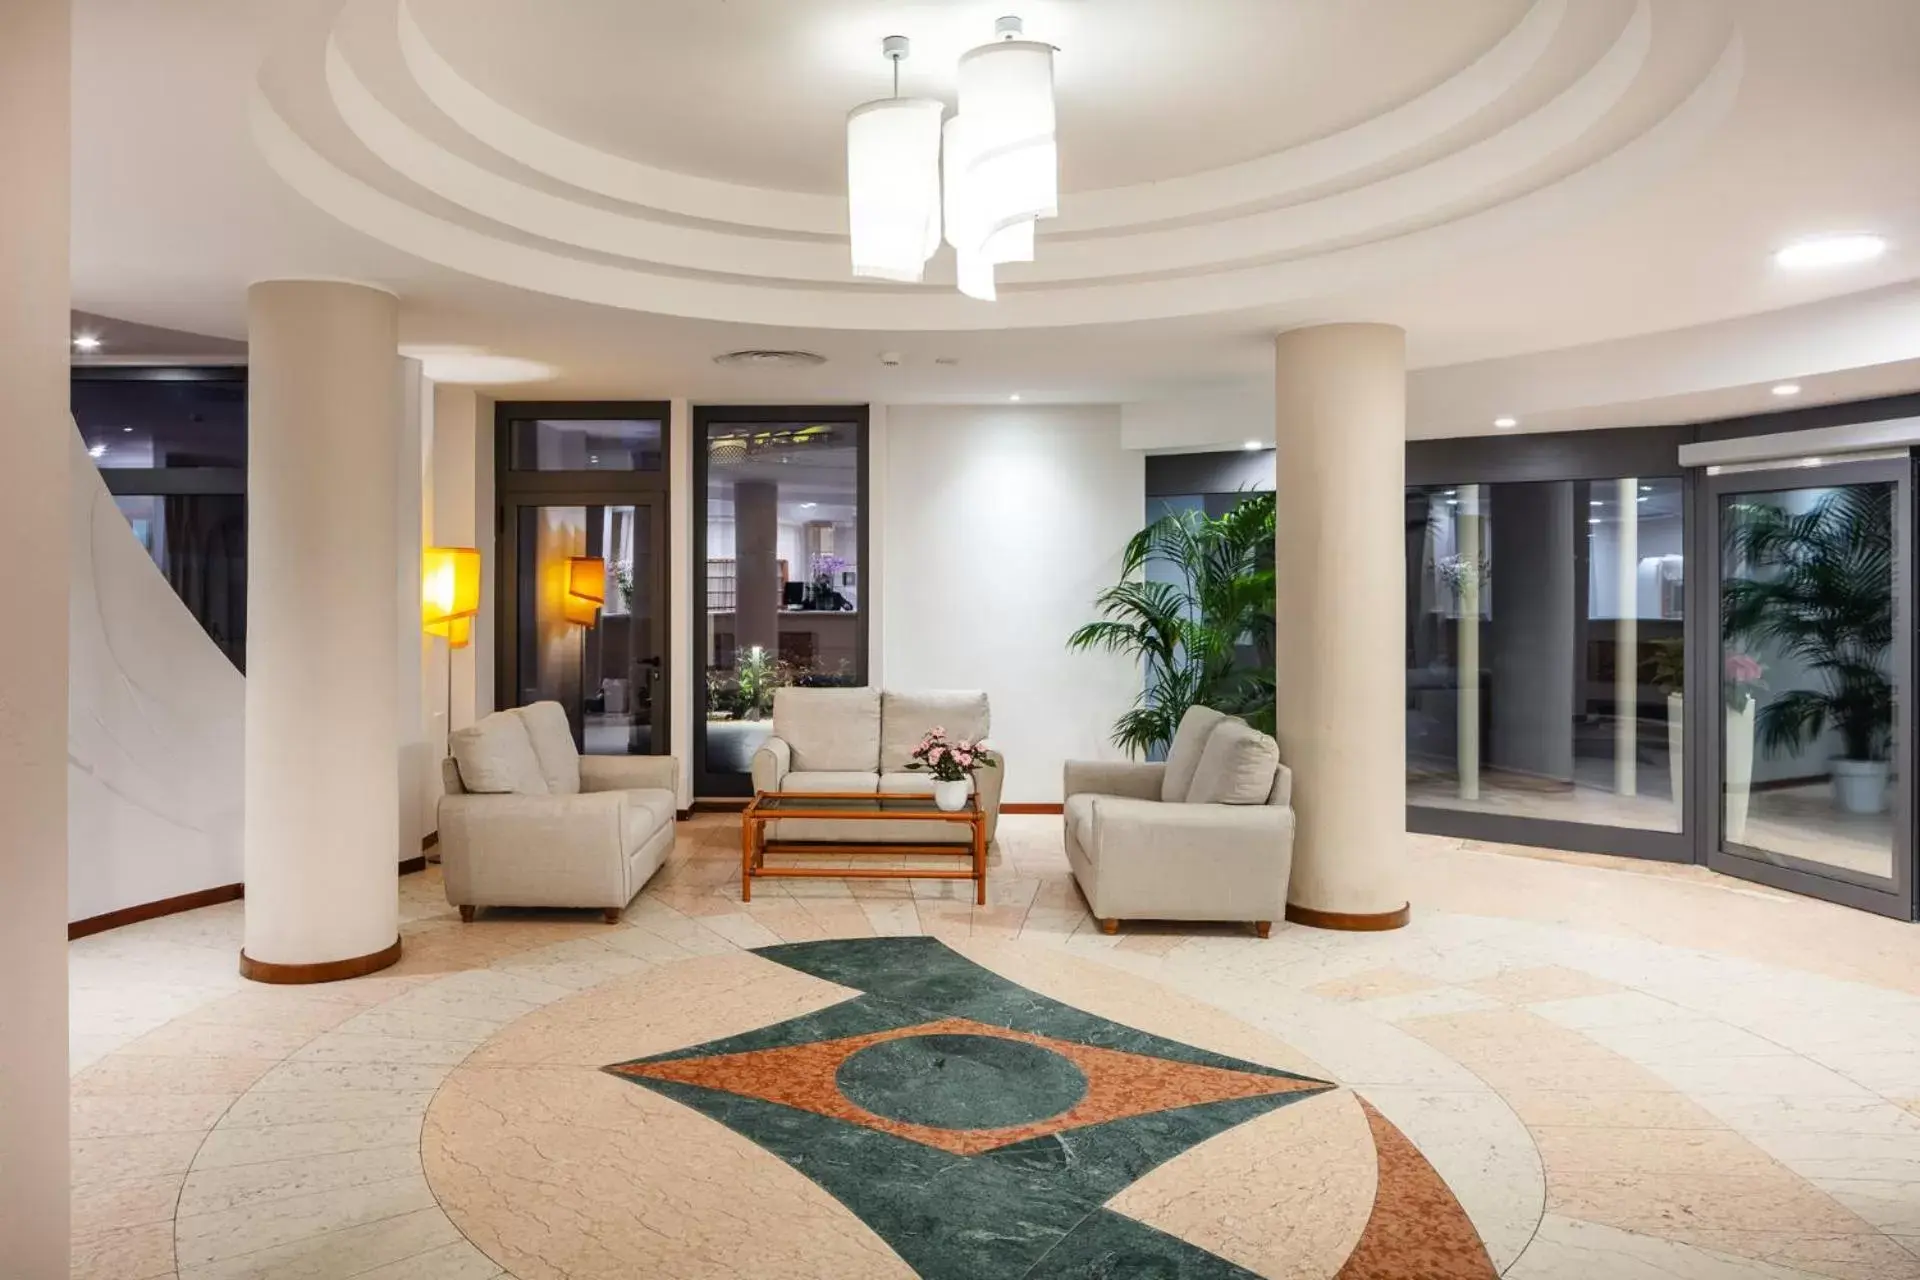 Lobby or reception, Lobby/Reception in Hotel Carlo Felice